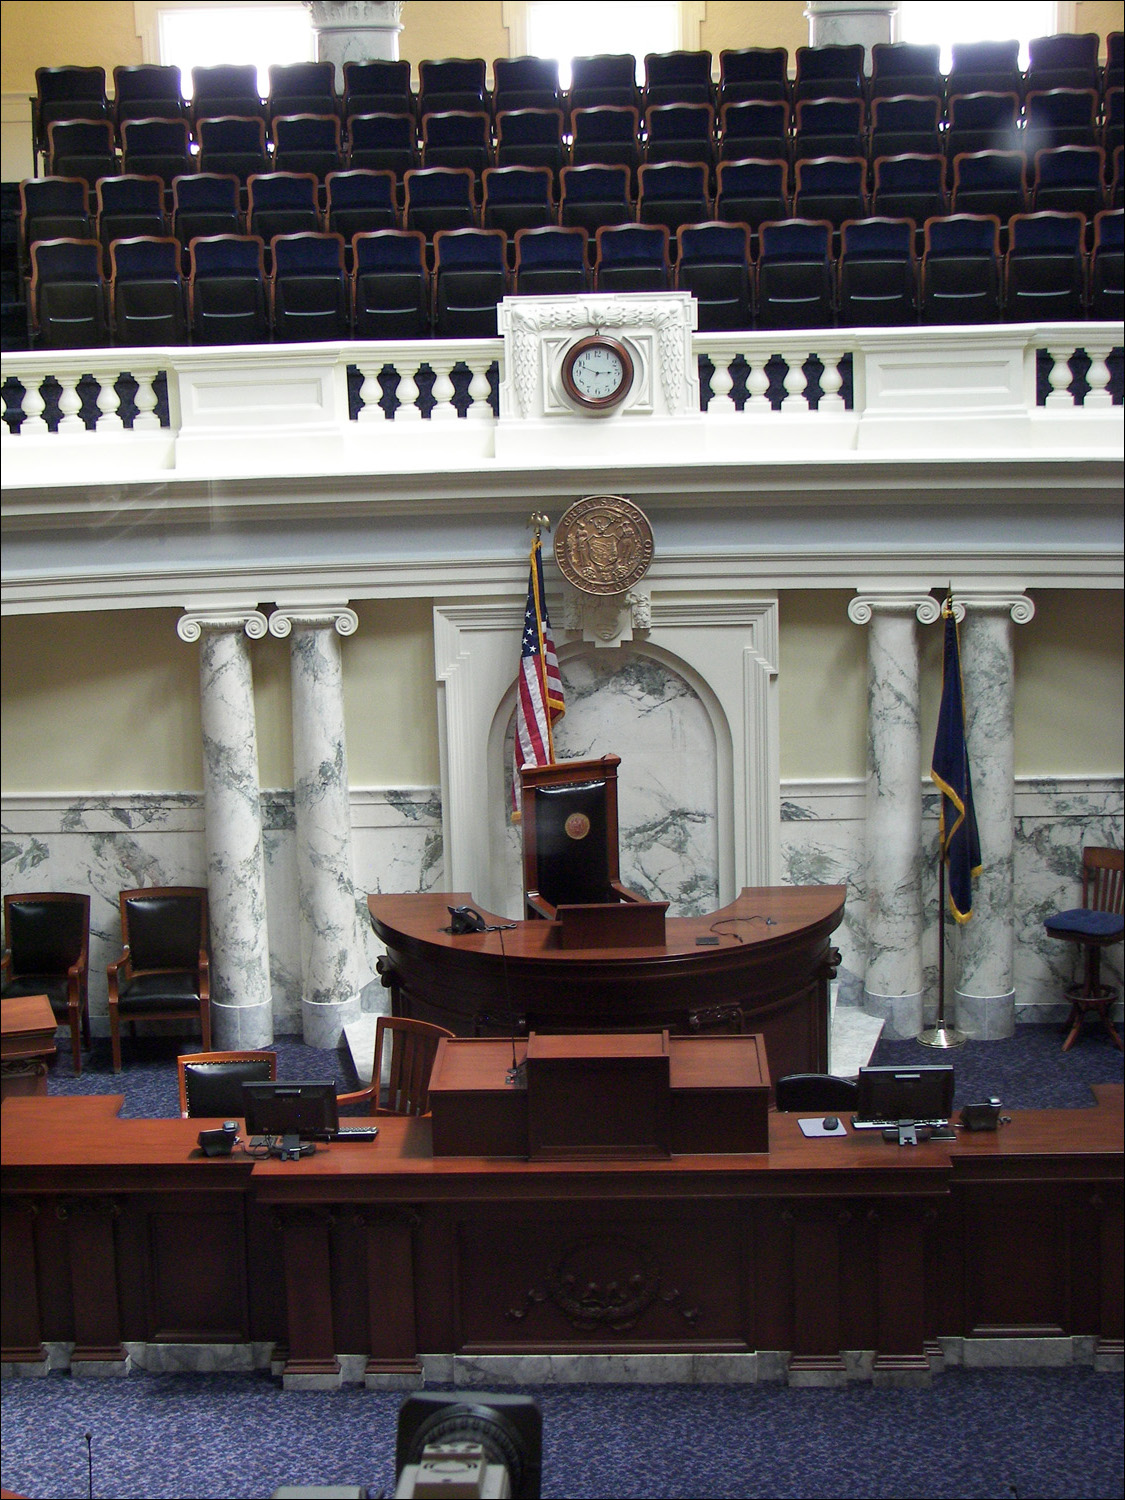 Idaho state assembly chambers